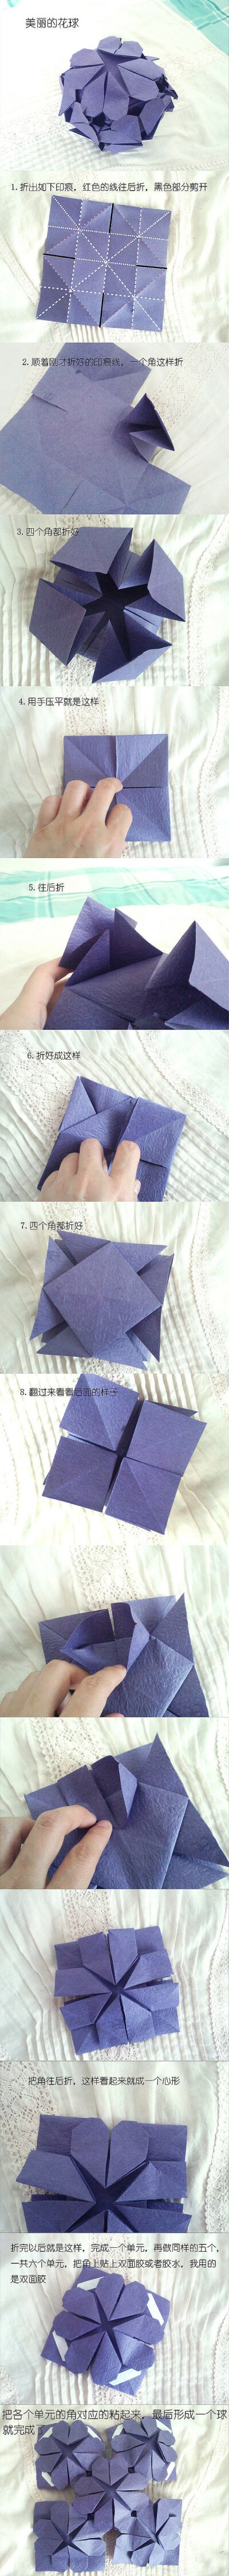  手工DIY 折纸